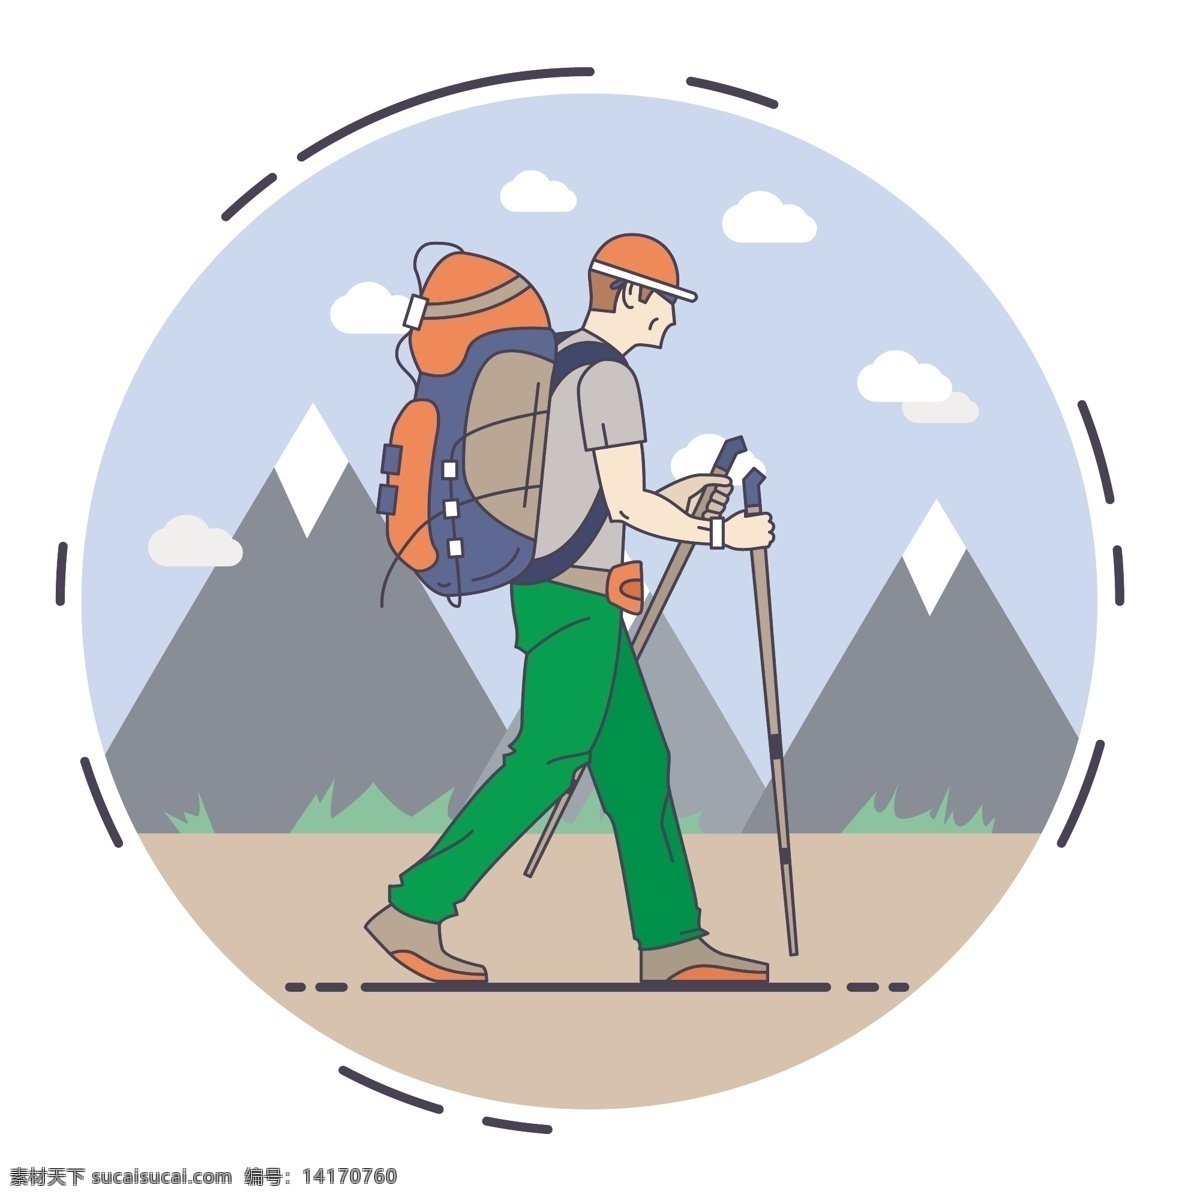 徒步旅行插图 旅游 自然 山水 地势平坦 字符 体育 男孩 露营 绘画 散步 冒险 背包 徒步旅行 旅程